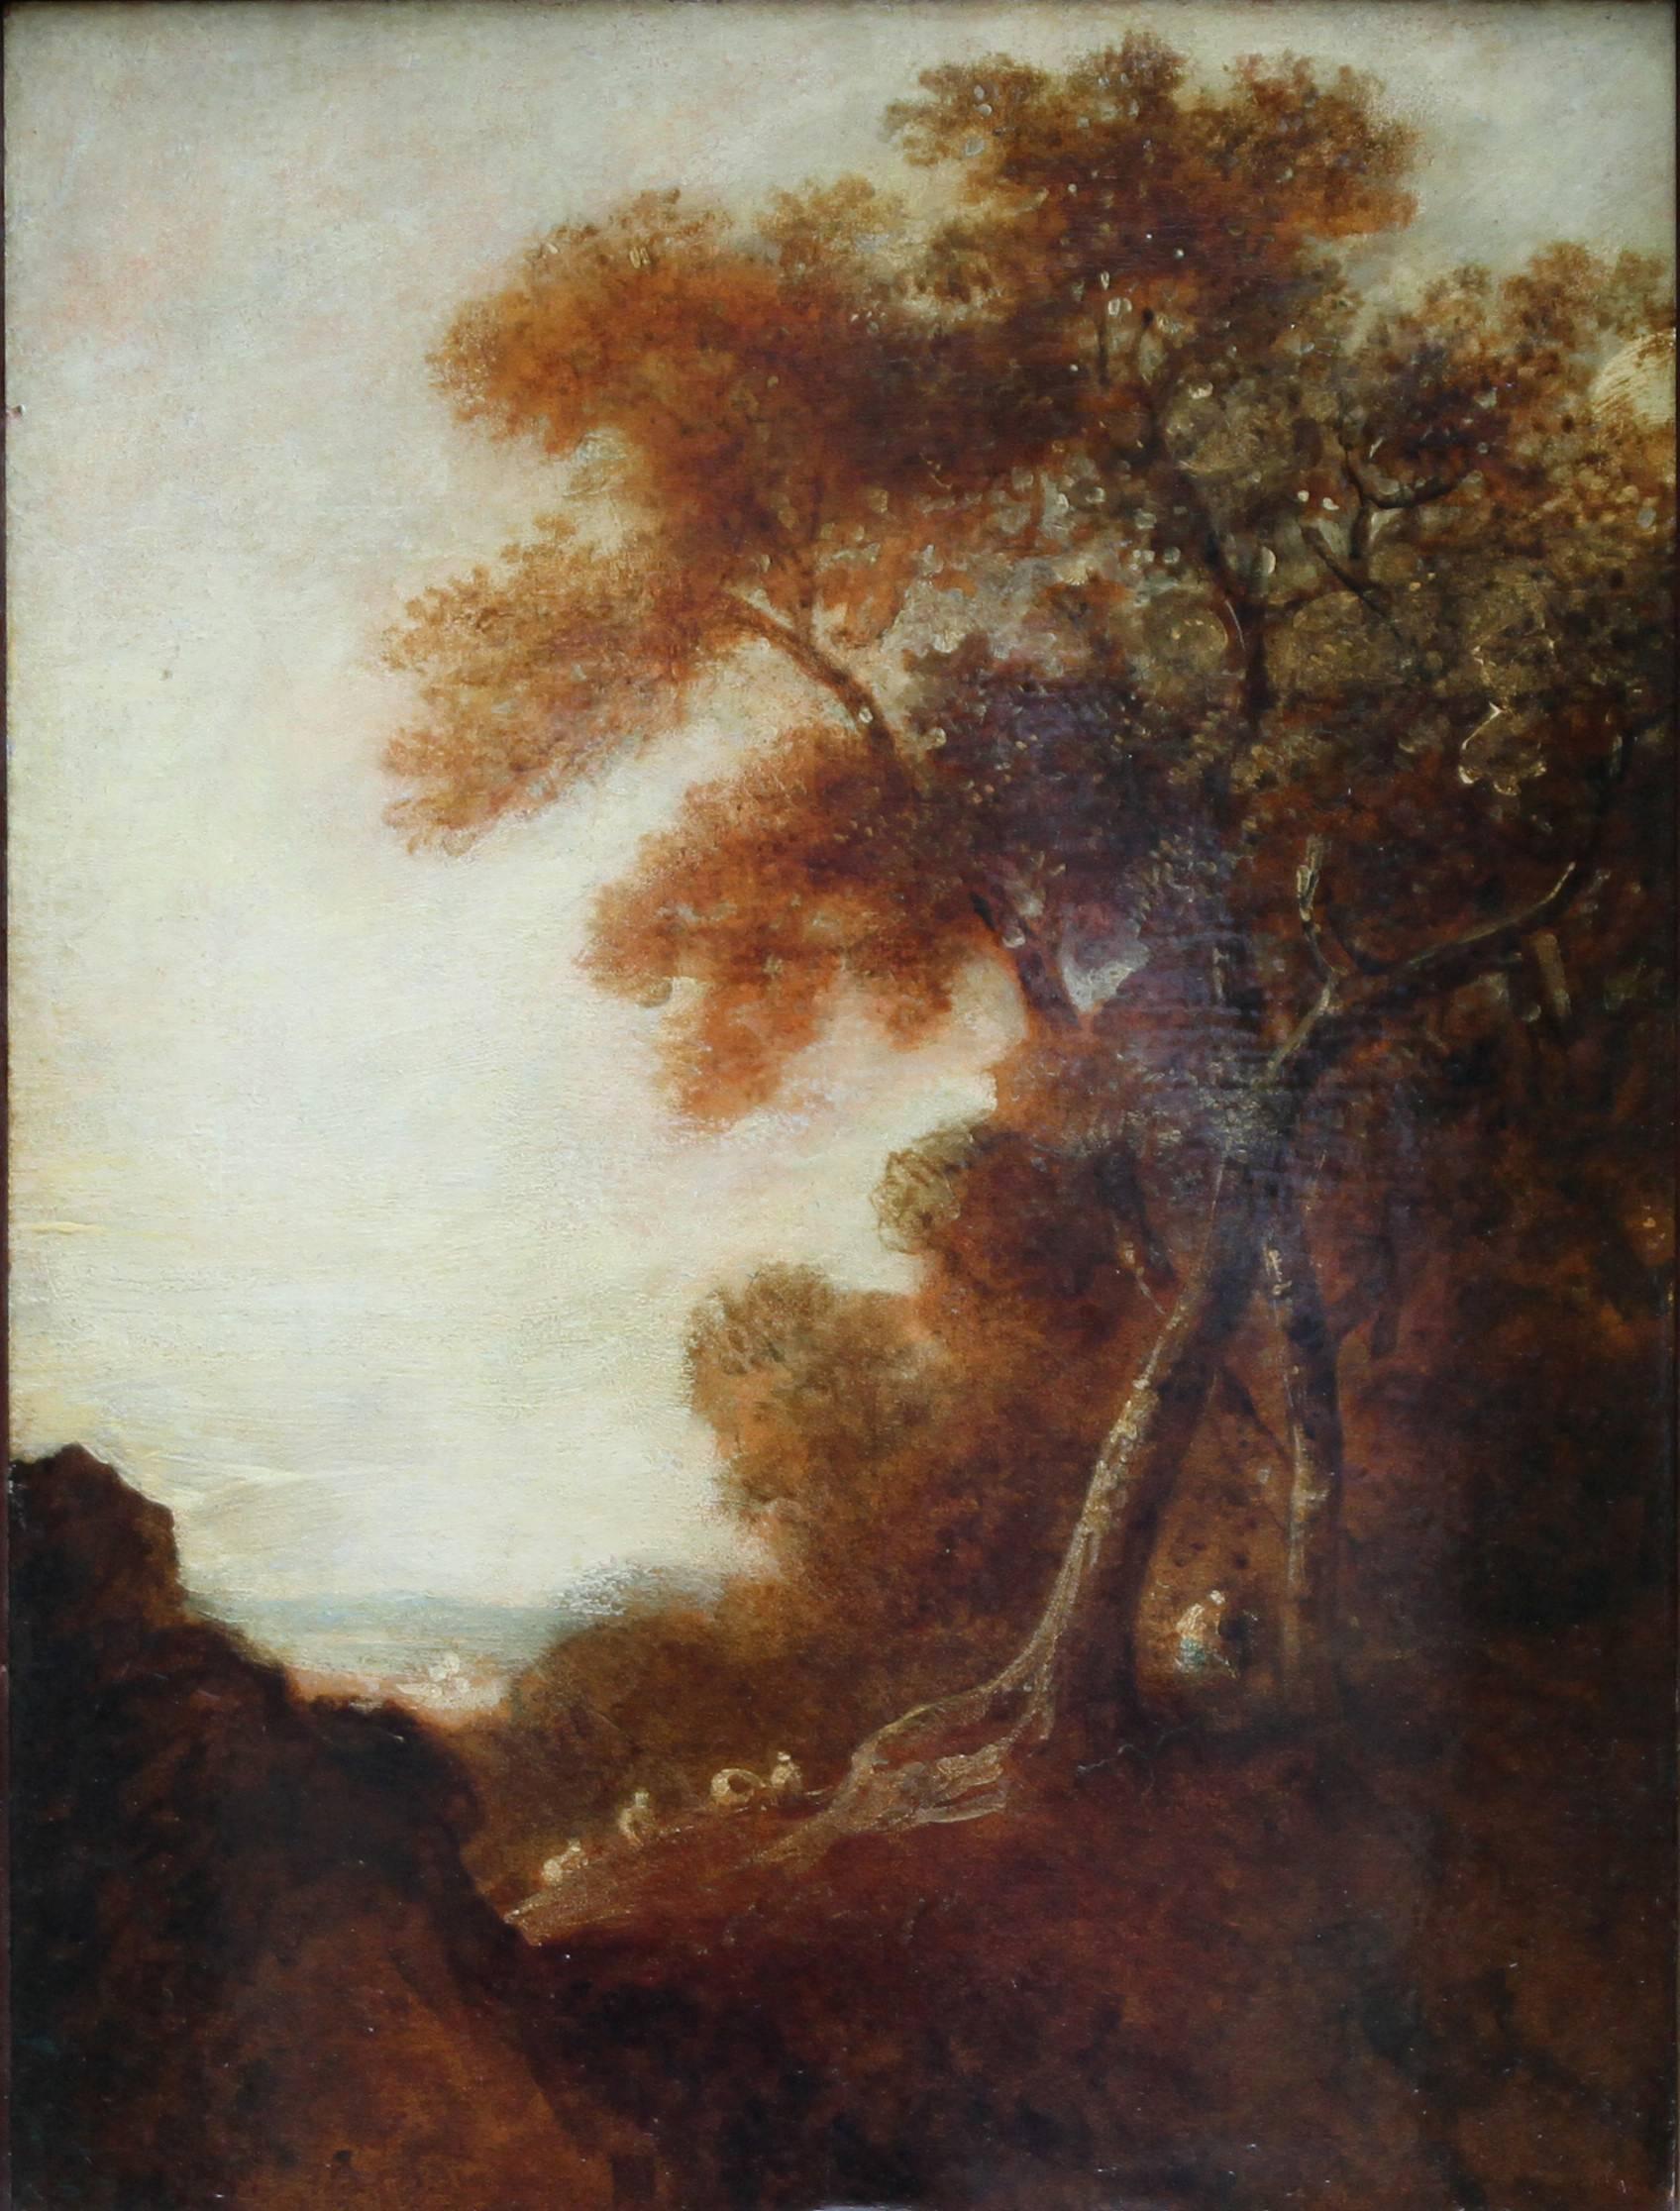 Holz-Landschaft – britische Kunst des 18. Jahrhunderts, Ölgemälde mit Bäumen und Figuren – Painting von Thomas Gainsborough (circle)